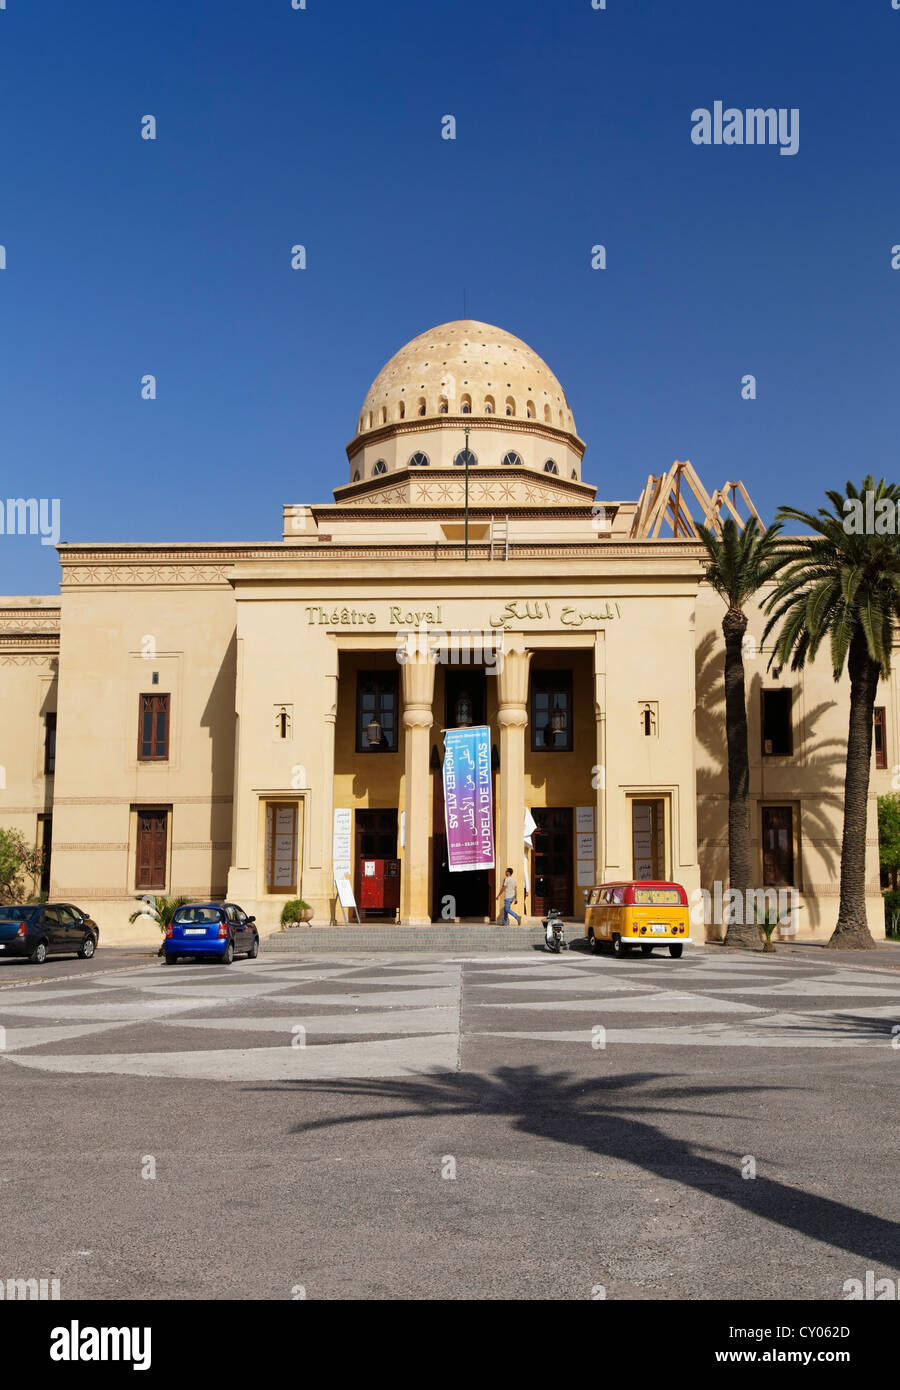 Theatre Royal di Marrakech, Marrakech-Tensift-El Haouz, Marocco, Mahgreb, Africa Settentrionale, Africa Foto Stock